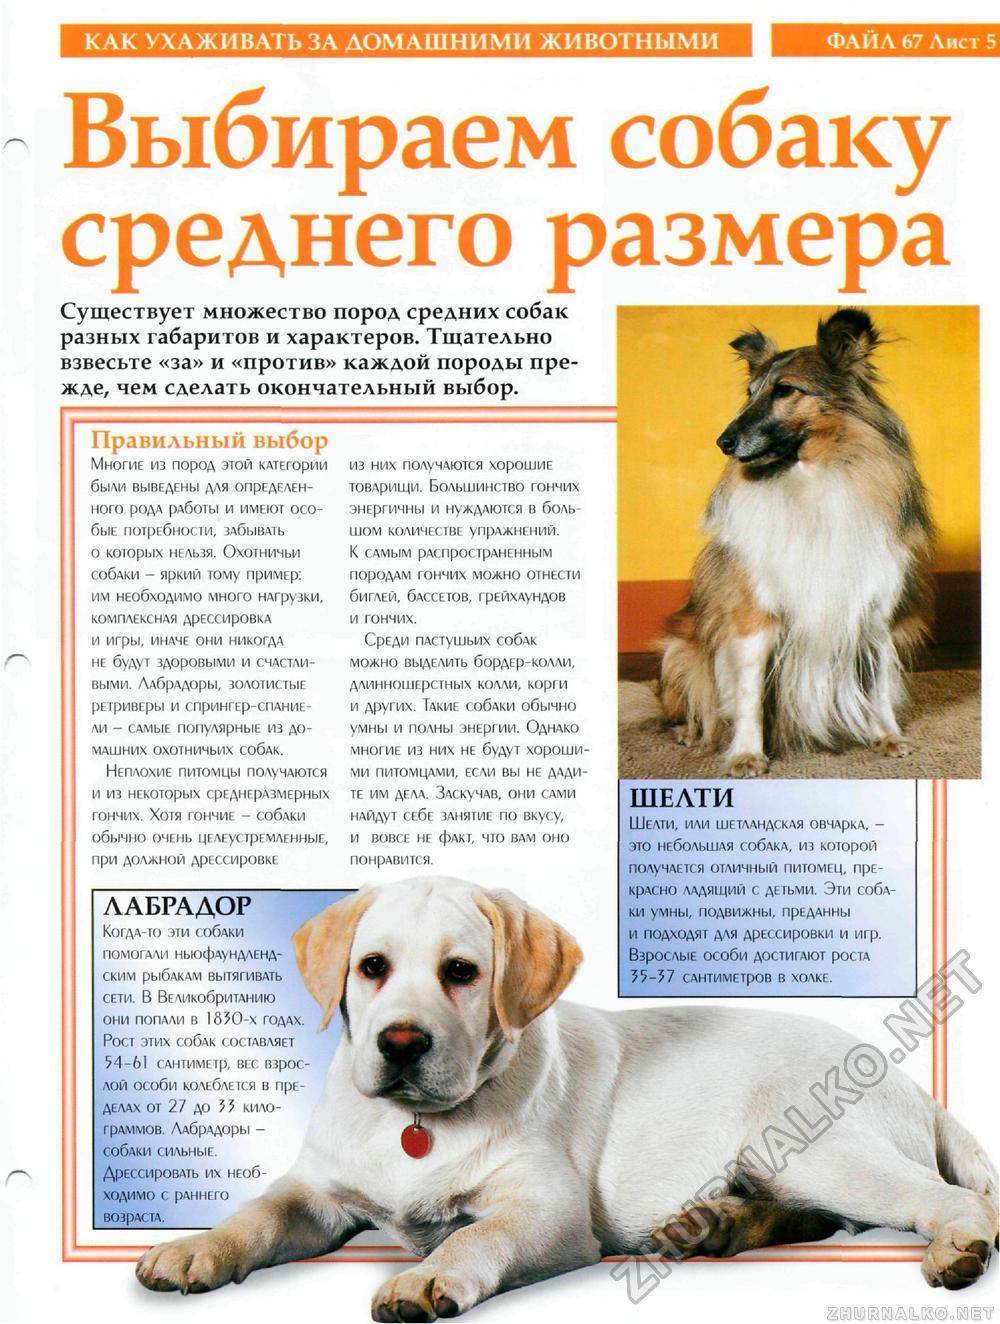 Собака болонка: описание, виды породы и фото